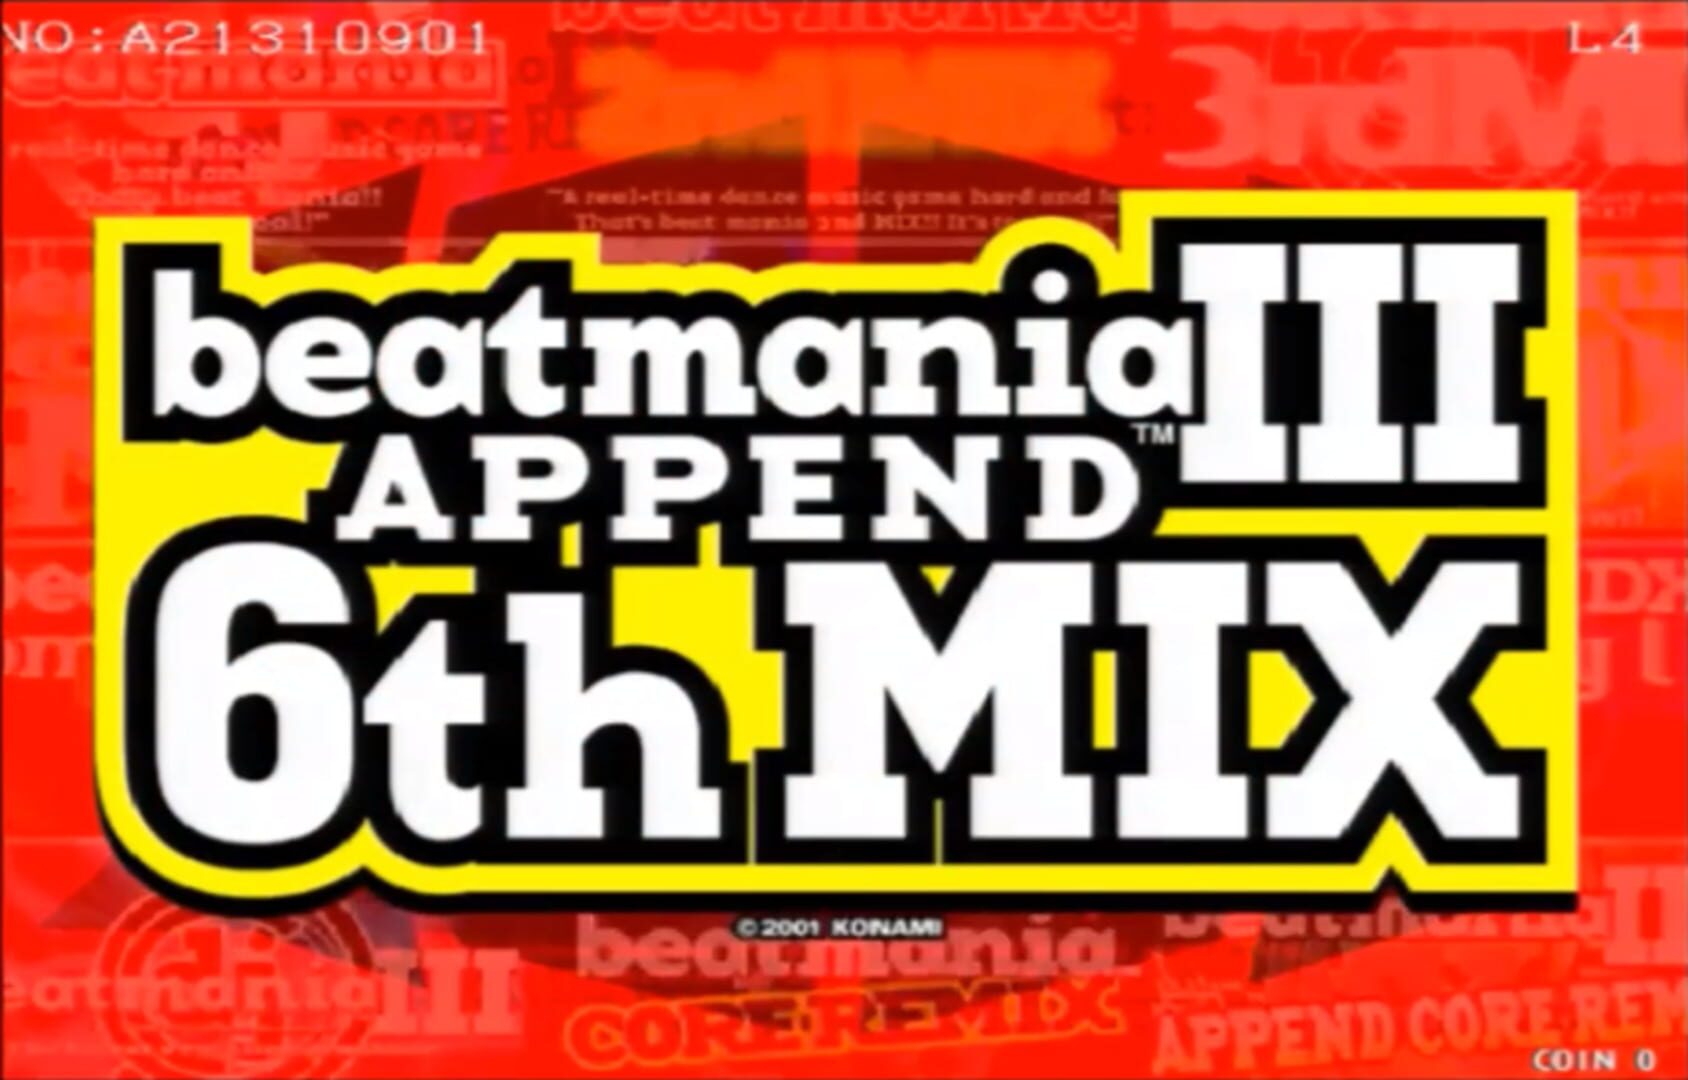 Captura de pantalla - Beatmania III: Append 6thMix